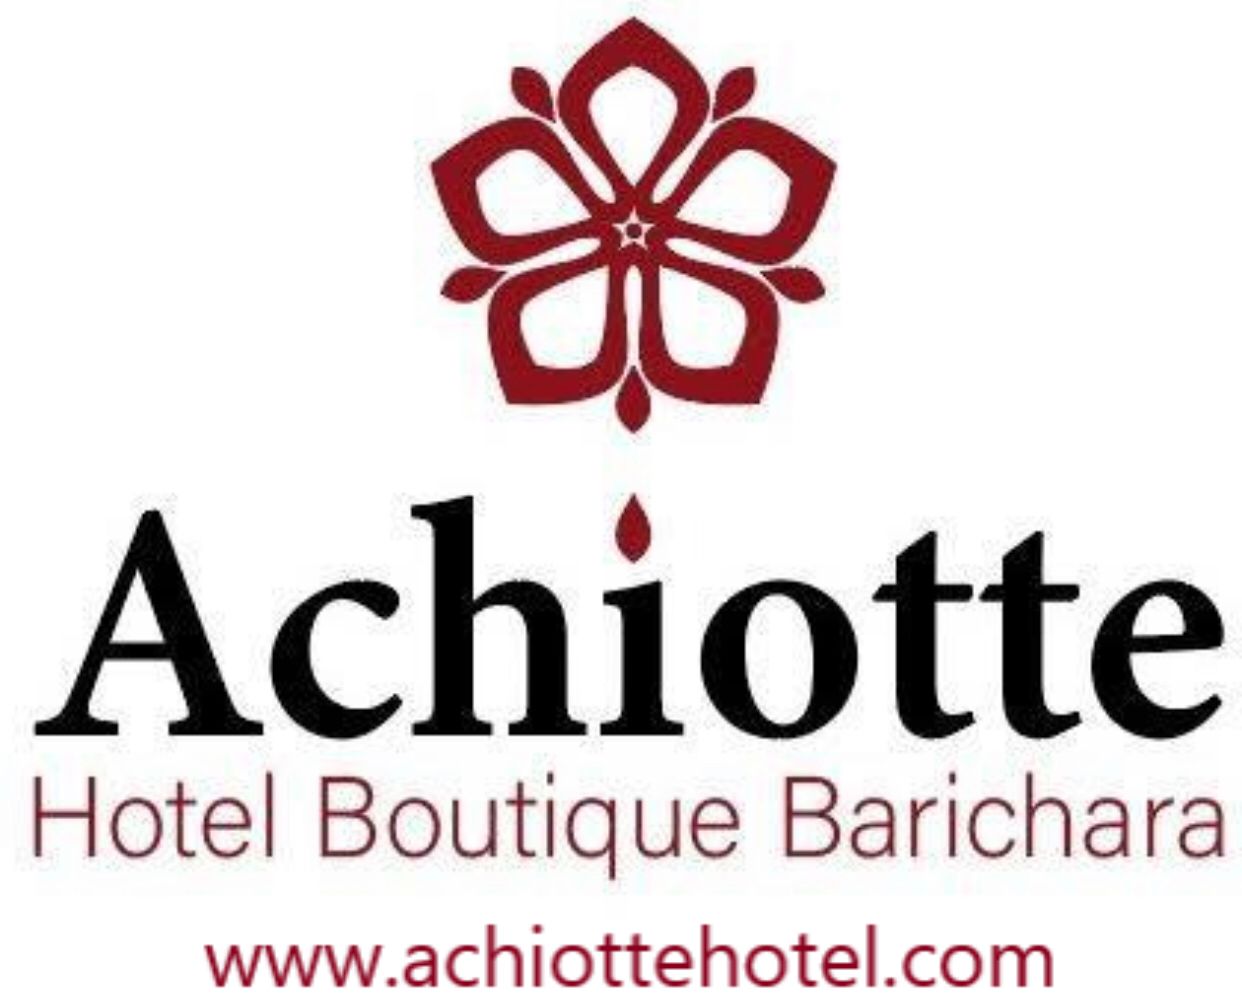 Achiotte Hotel Boutique